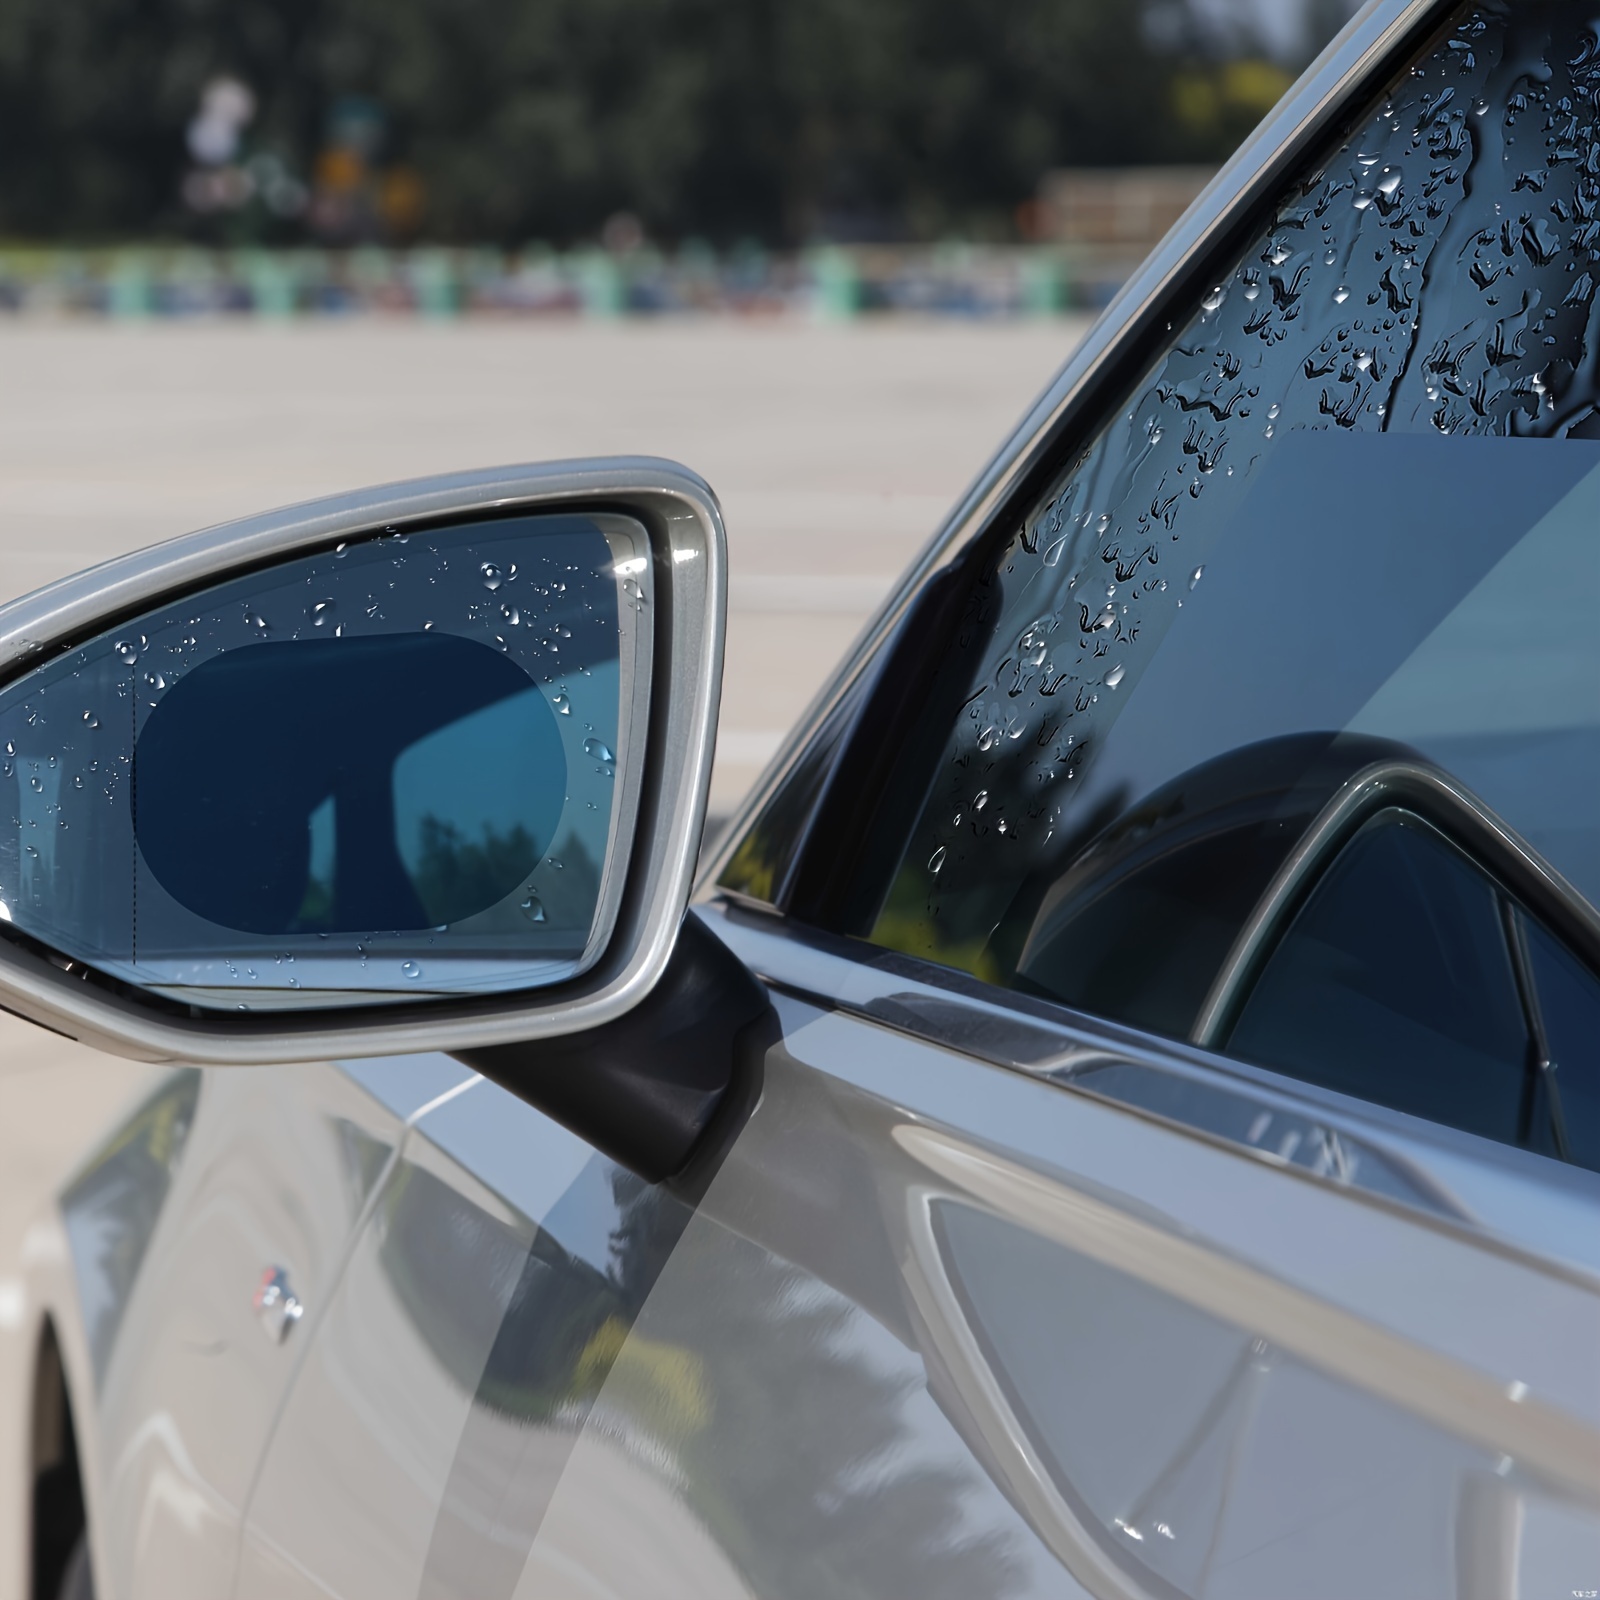 6 Teile Auto Rückspiegel Aufkleber Regenfest Schutz Folie Antibeschlag  Regen